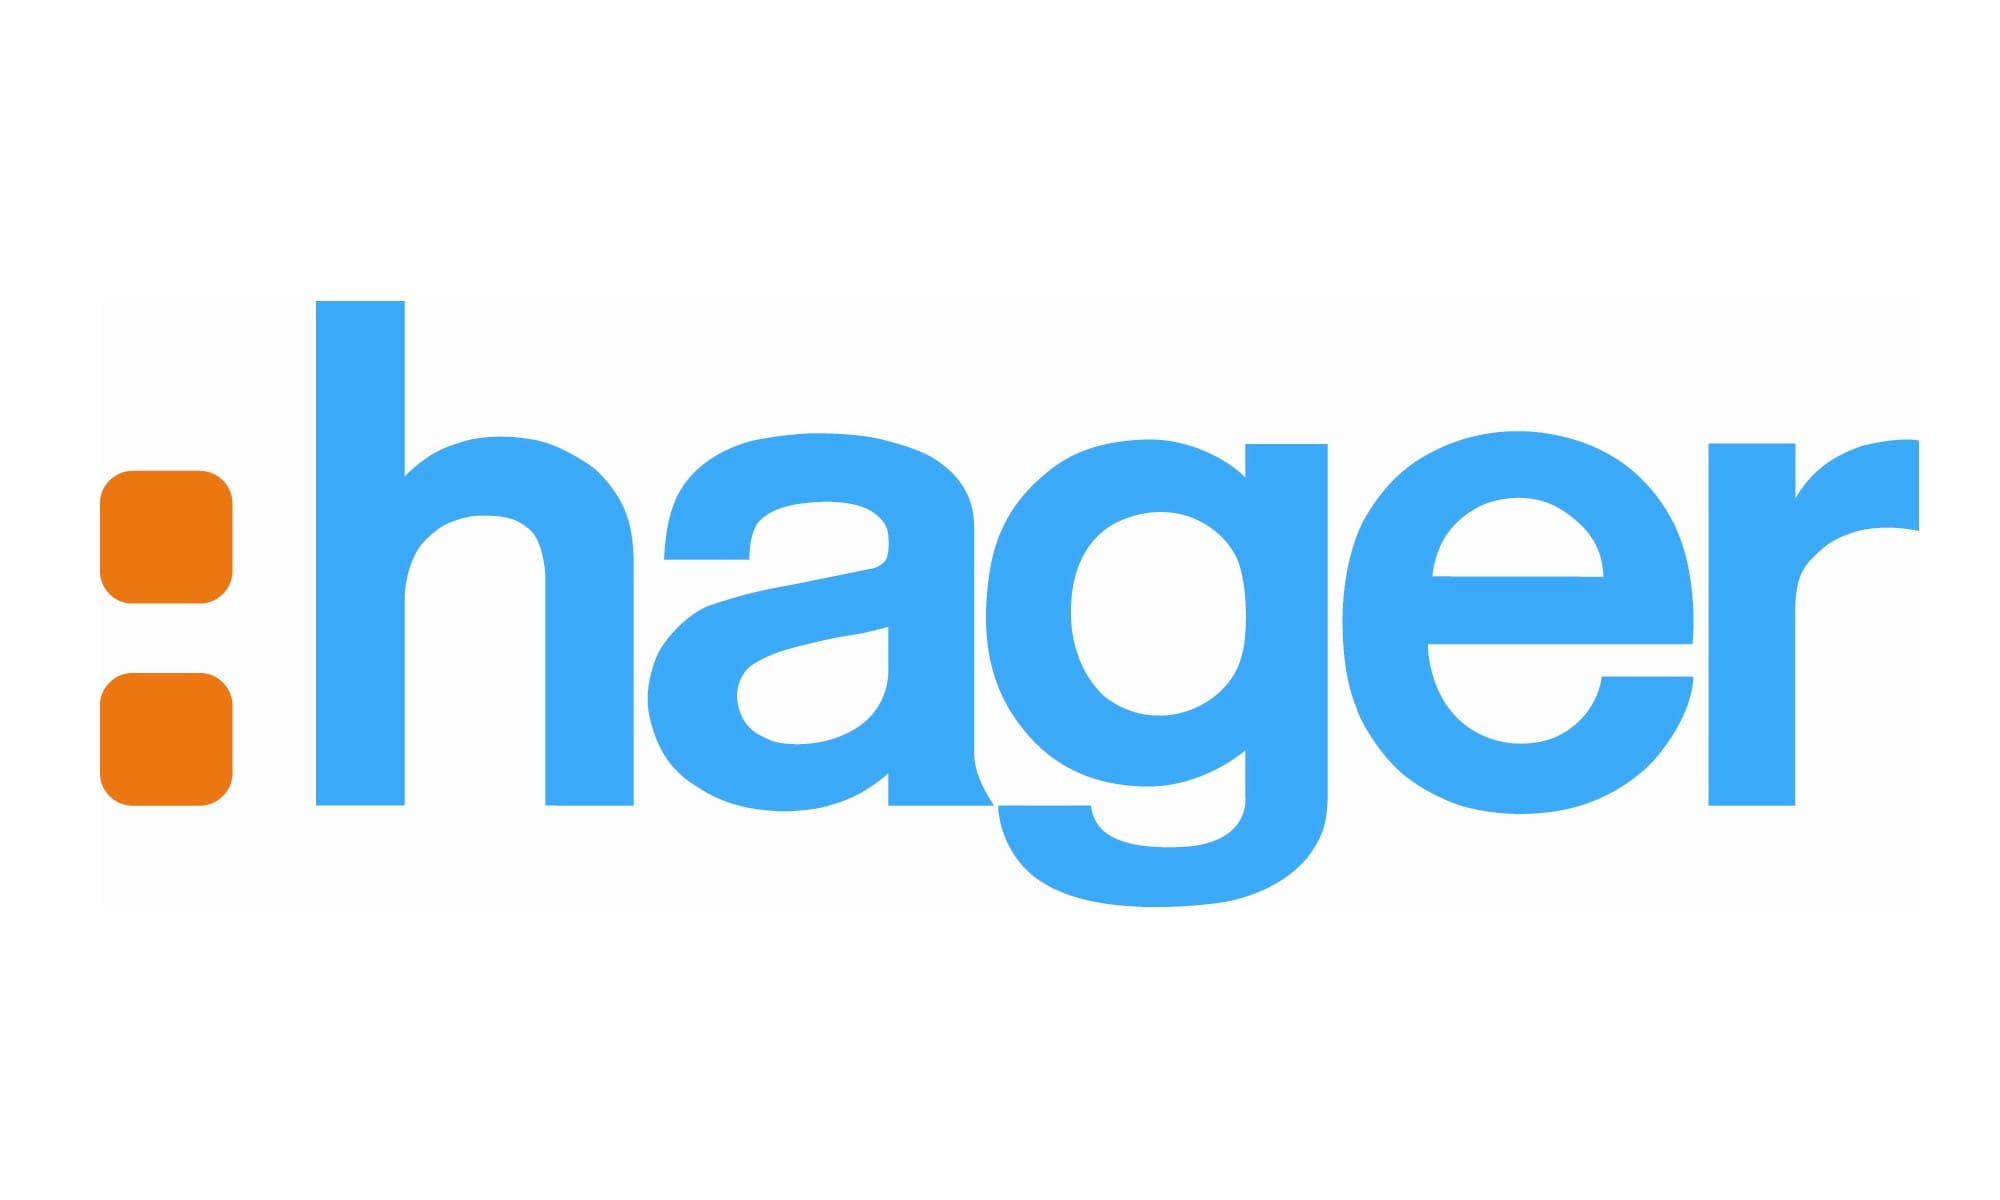 logo-Hager